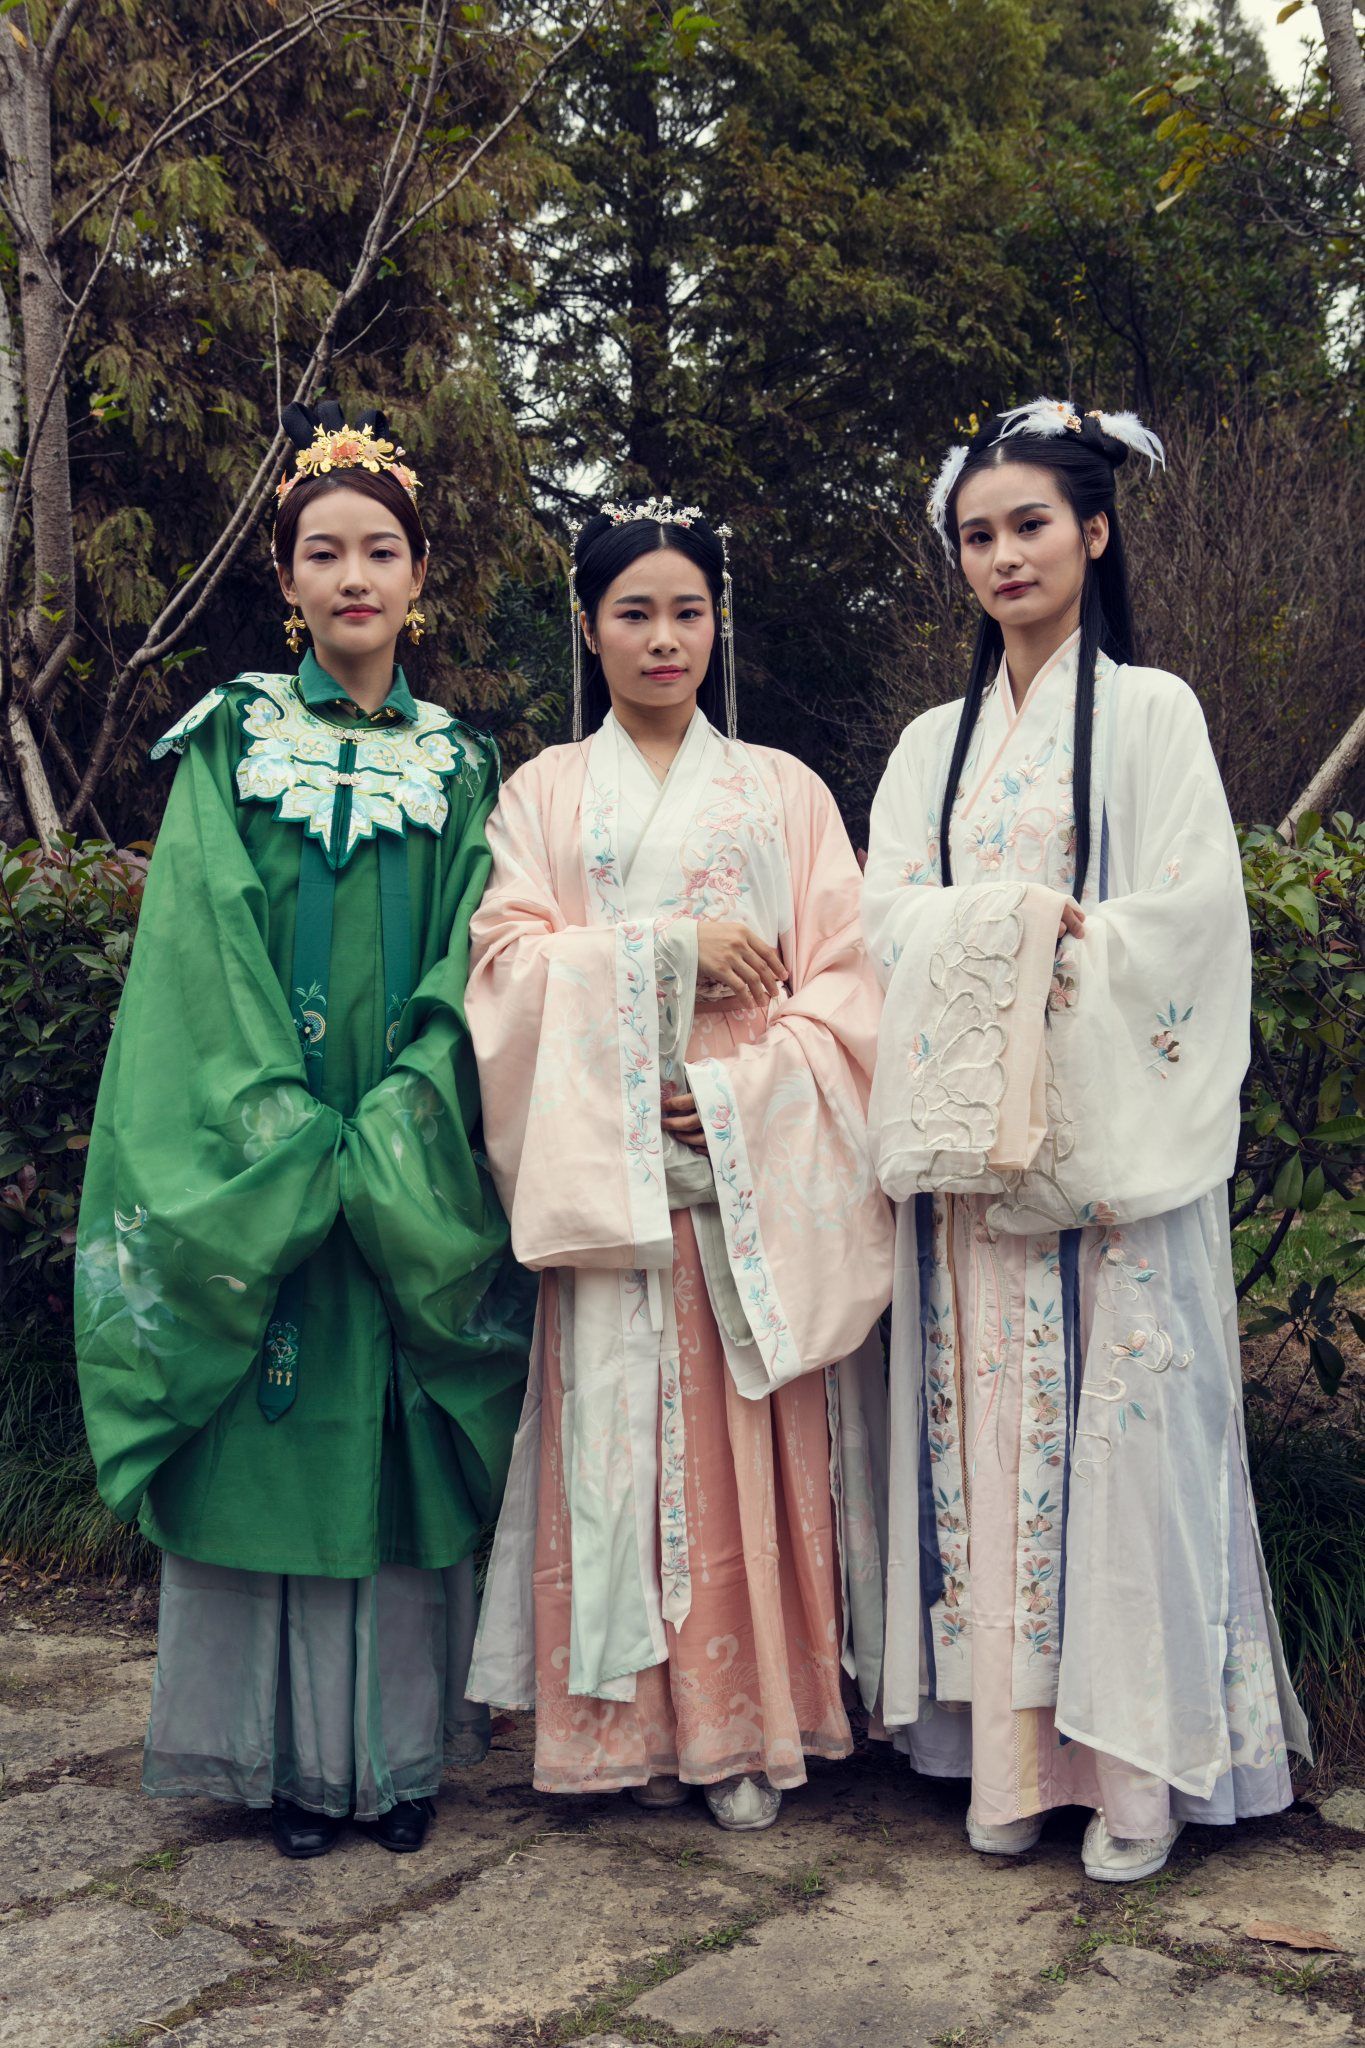 スナップ 中国で若者を中心に人気集める 漢服 漢民族の伝統衣装の魅力をアピール Wwdjapan Com